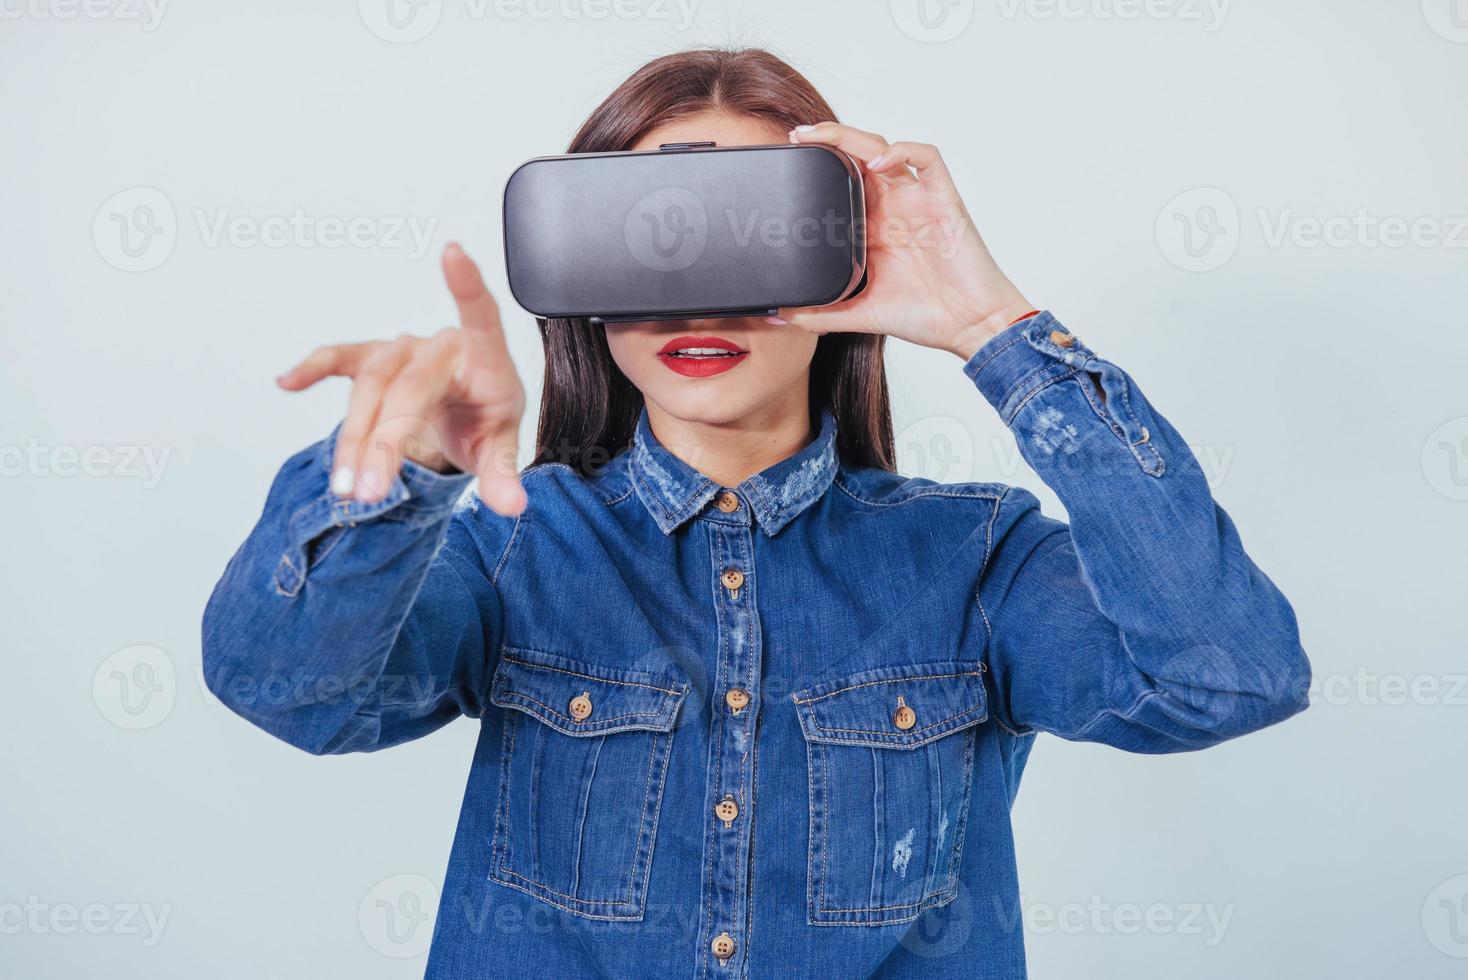 mulher bonita morena posando no estúdio, vestindo jeans, usando fones de ouvido de realidade virtual de óculos vr foto